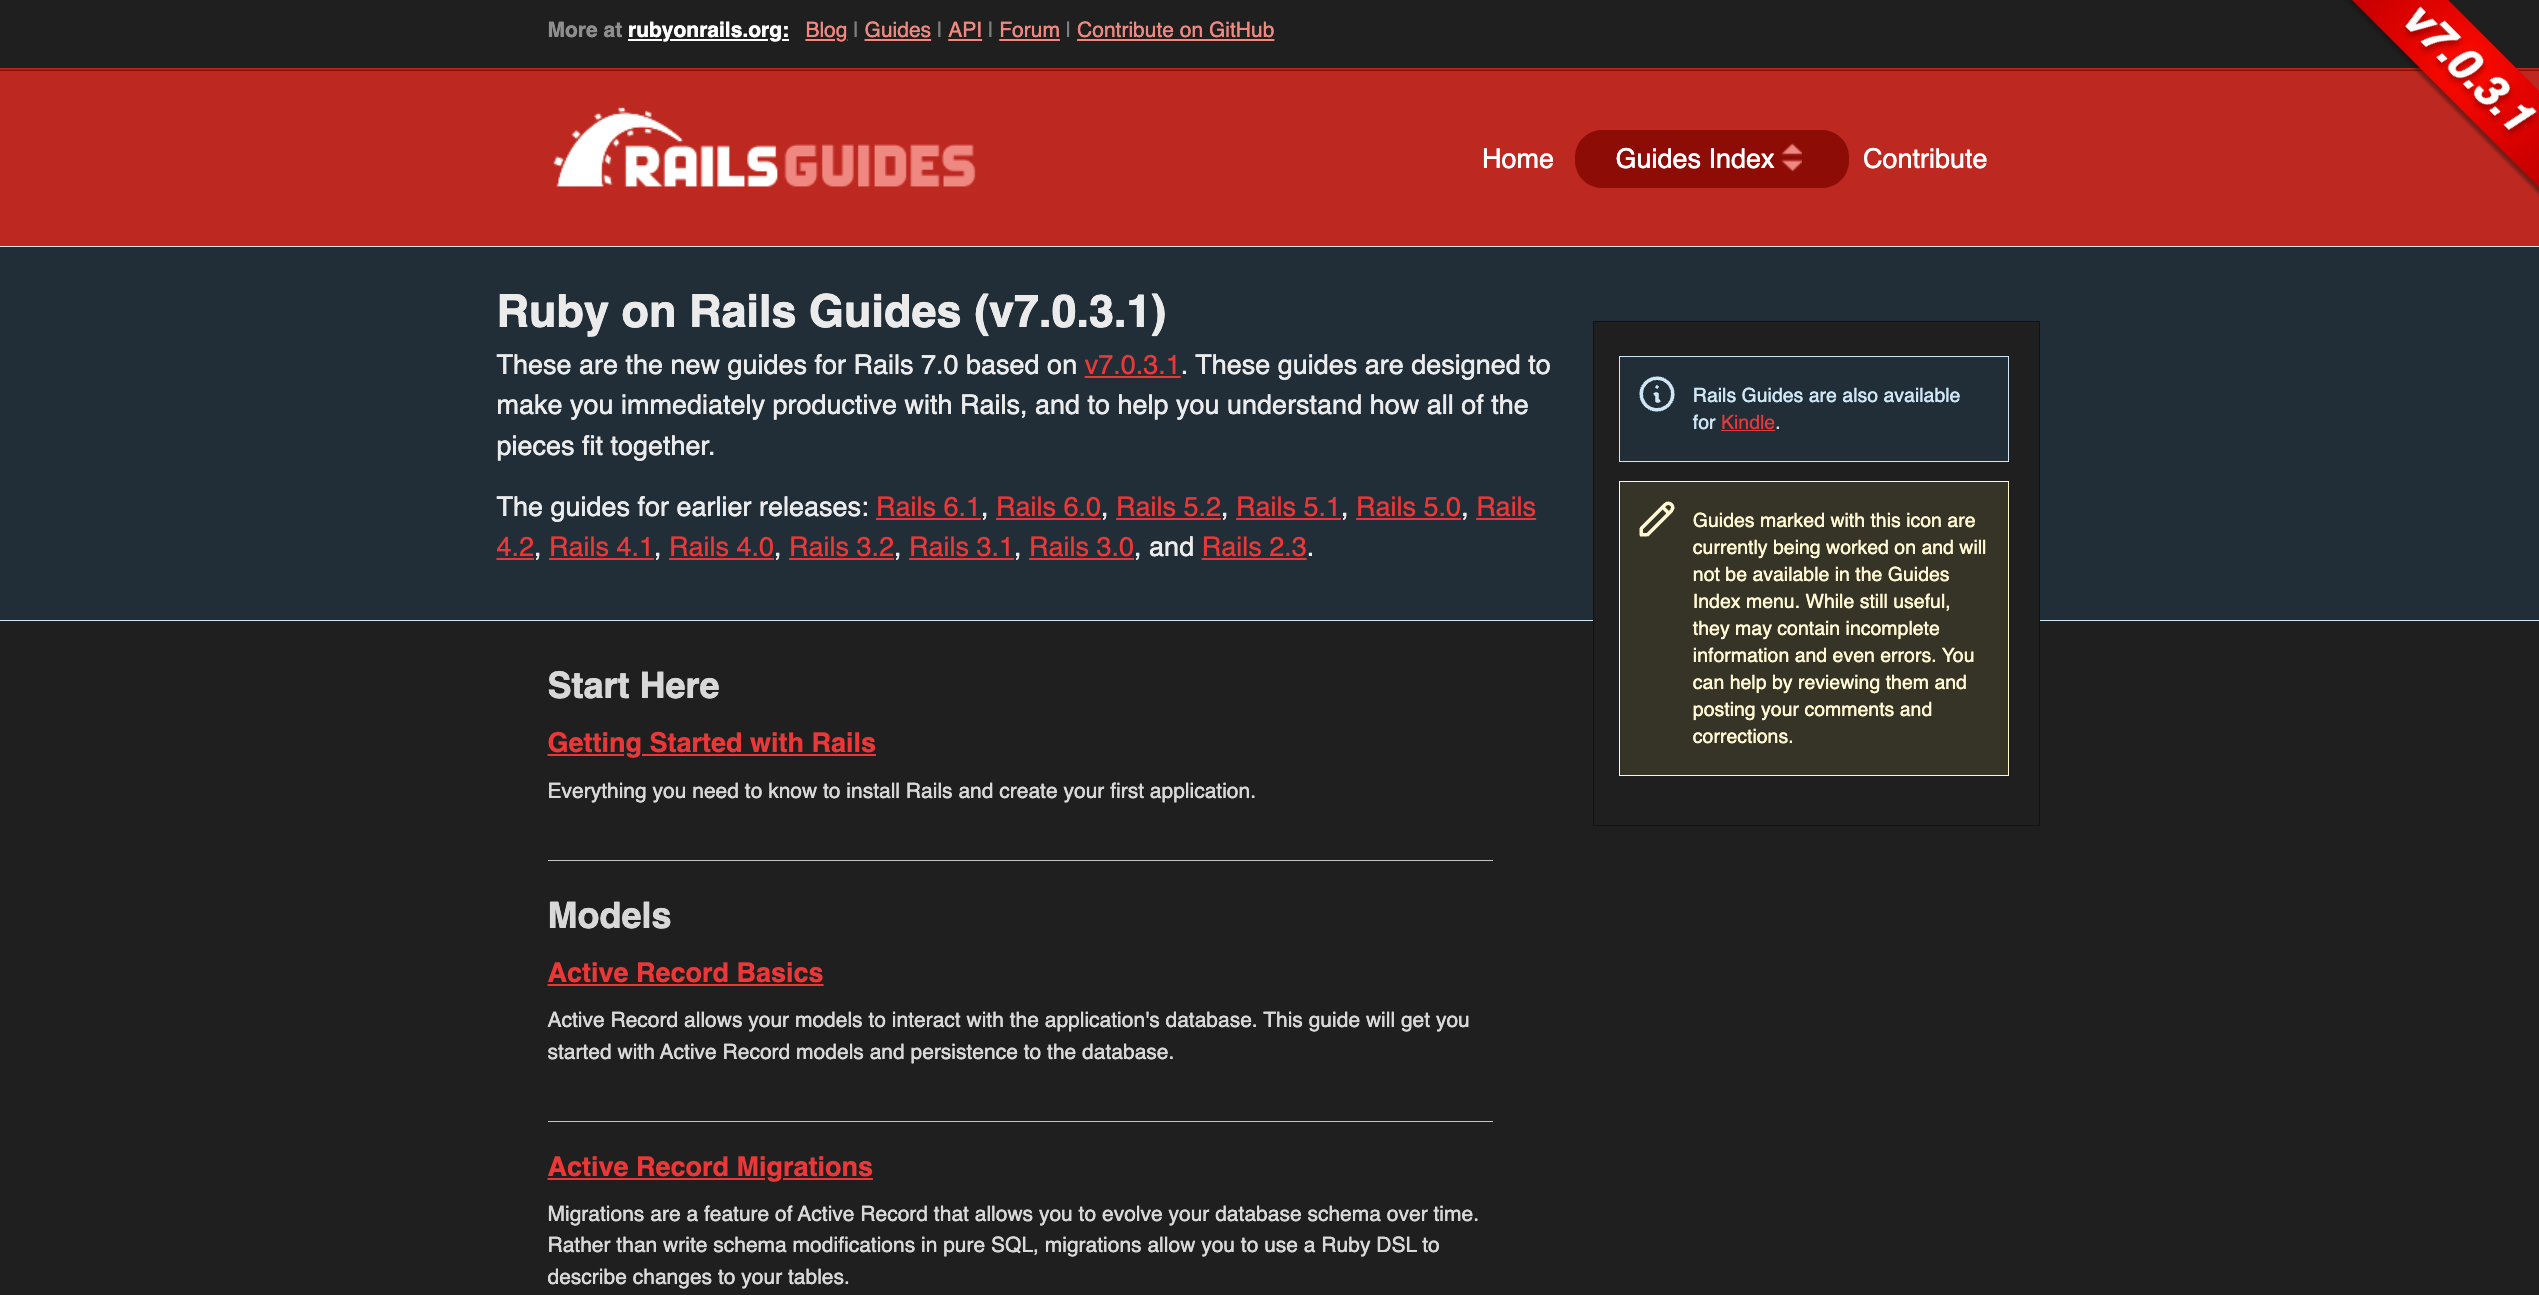 RailsGuides 網站首頁：包含 Rails 的各類使用手冊